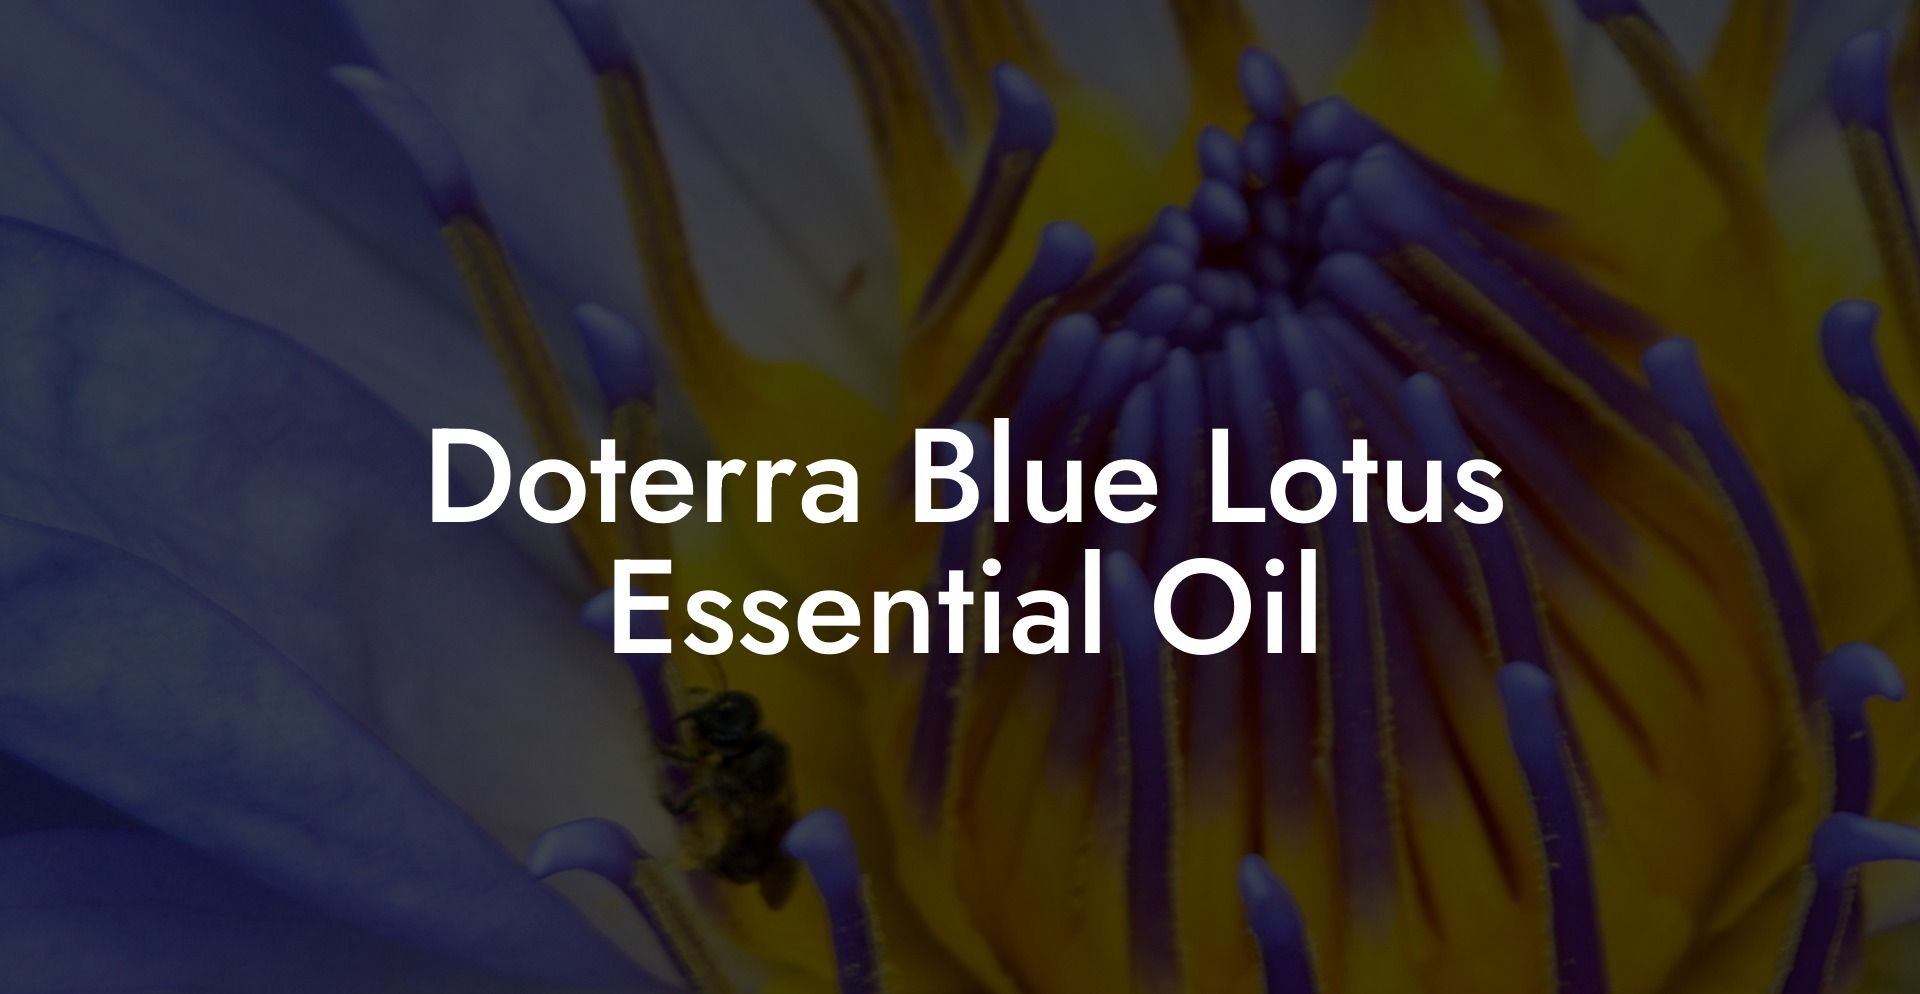 Doterra Blue Lotus Essential Oil